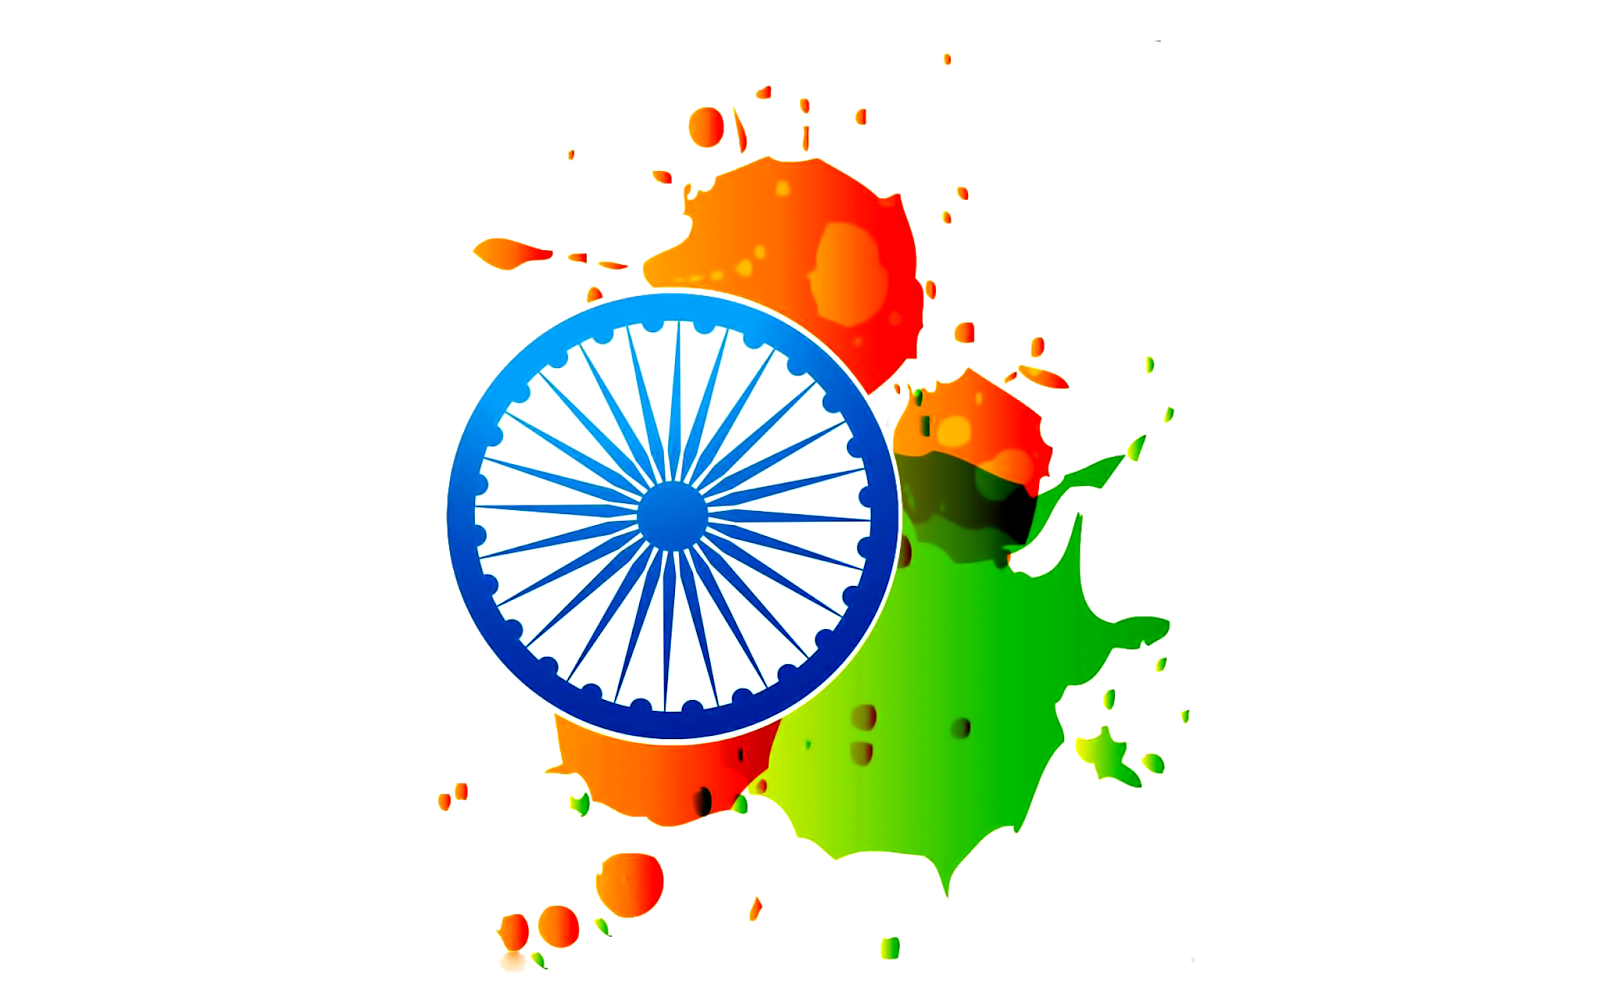 India Flag Transparent Image